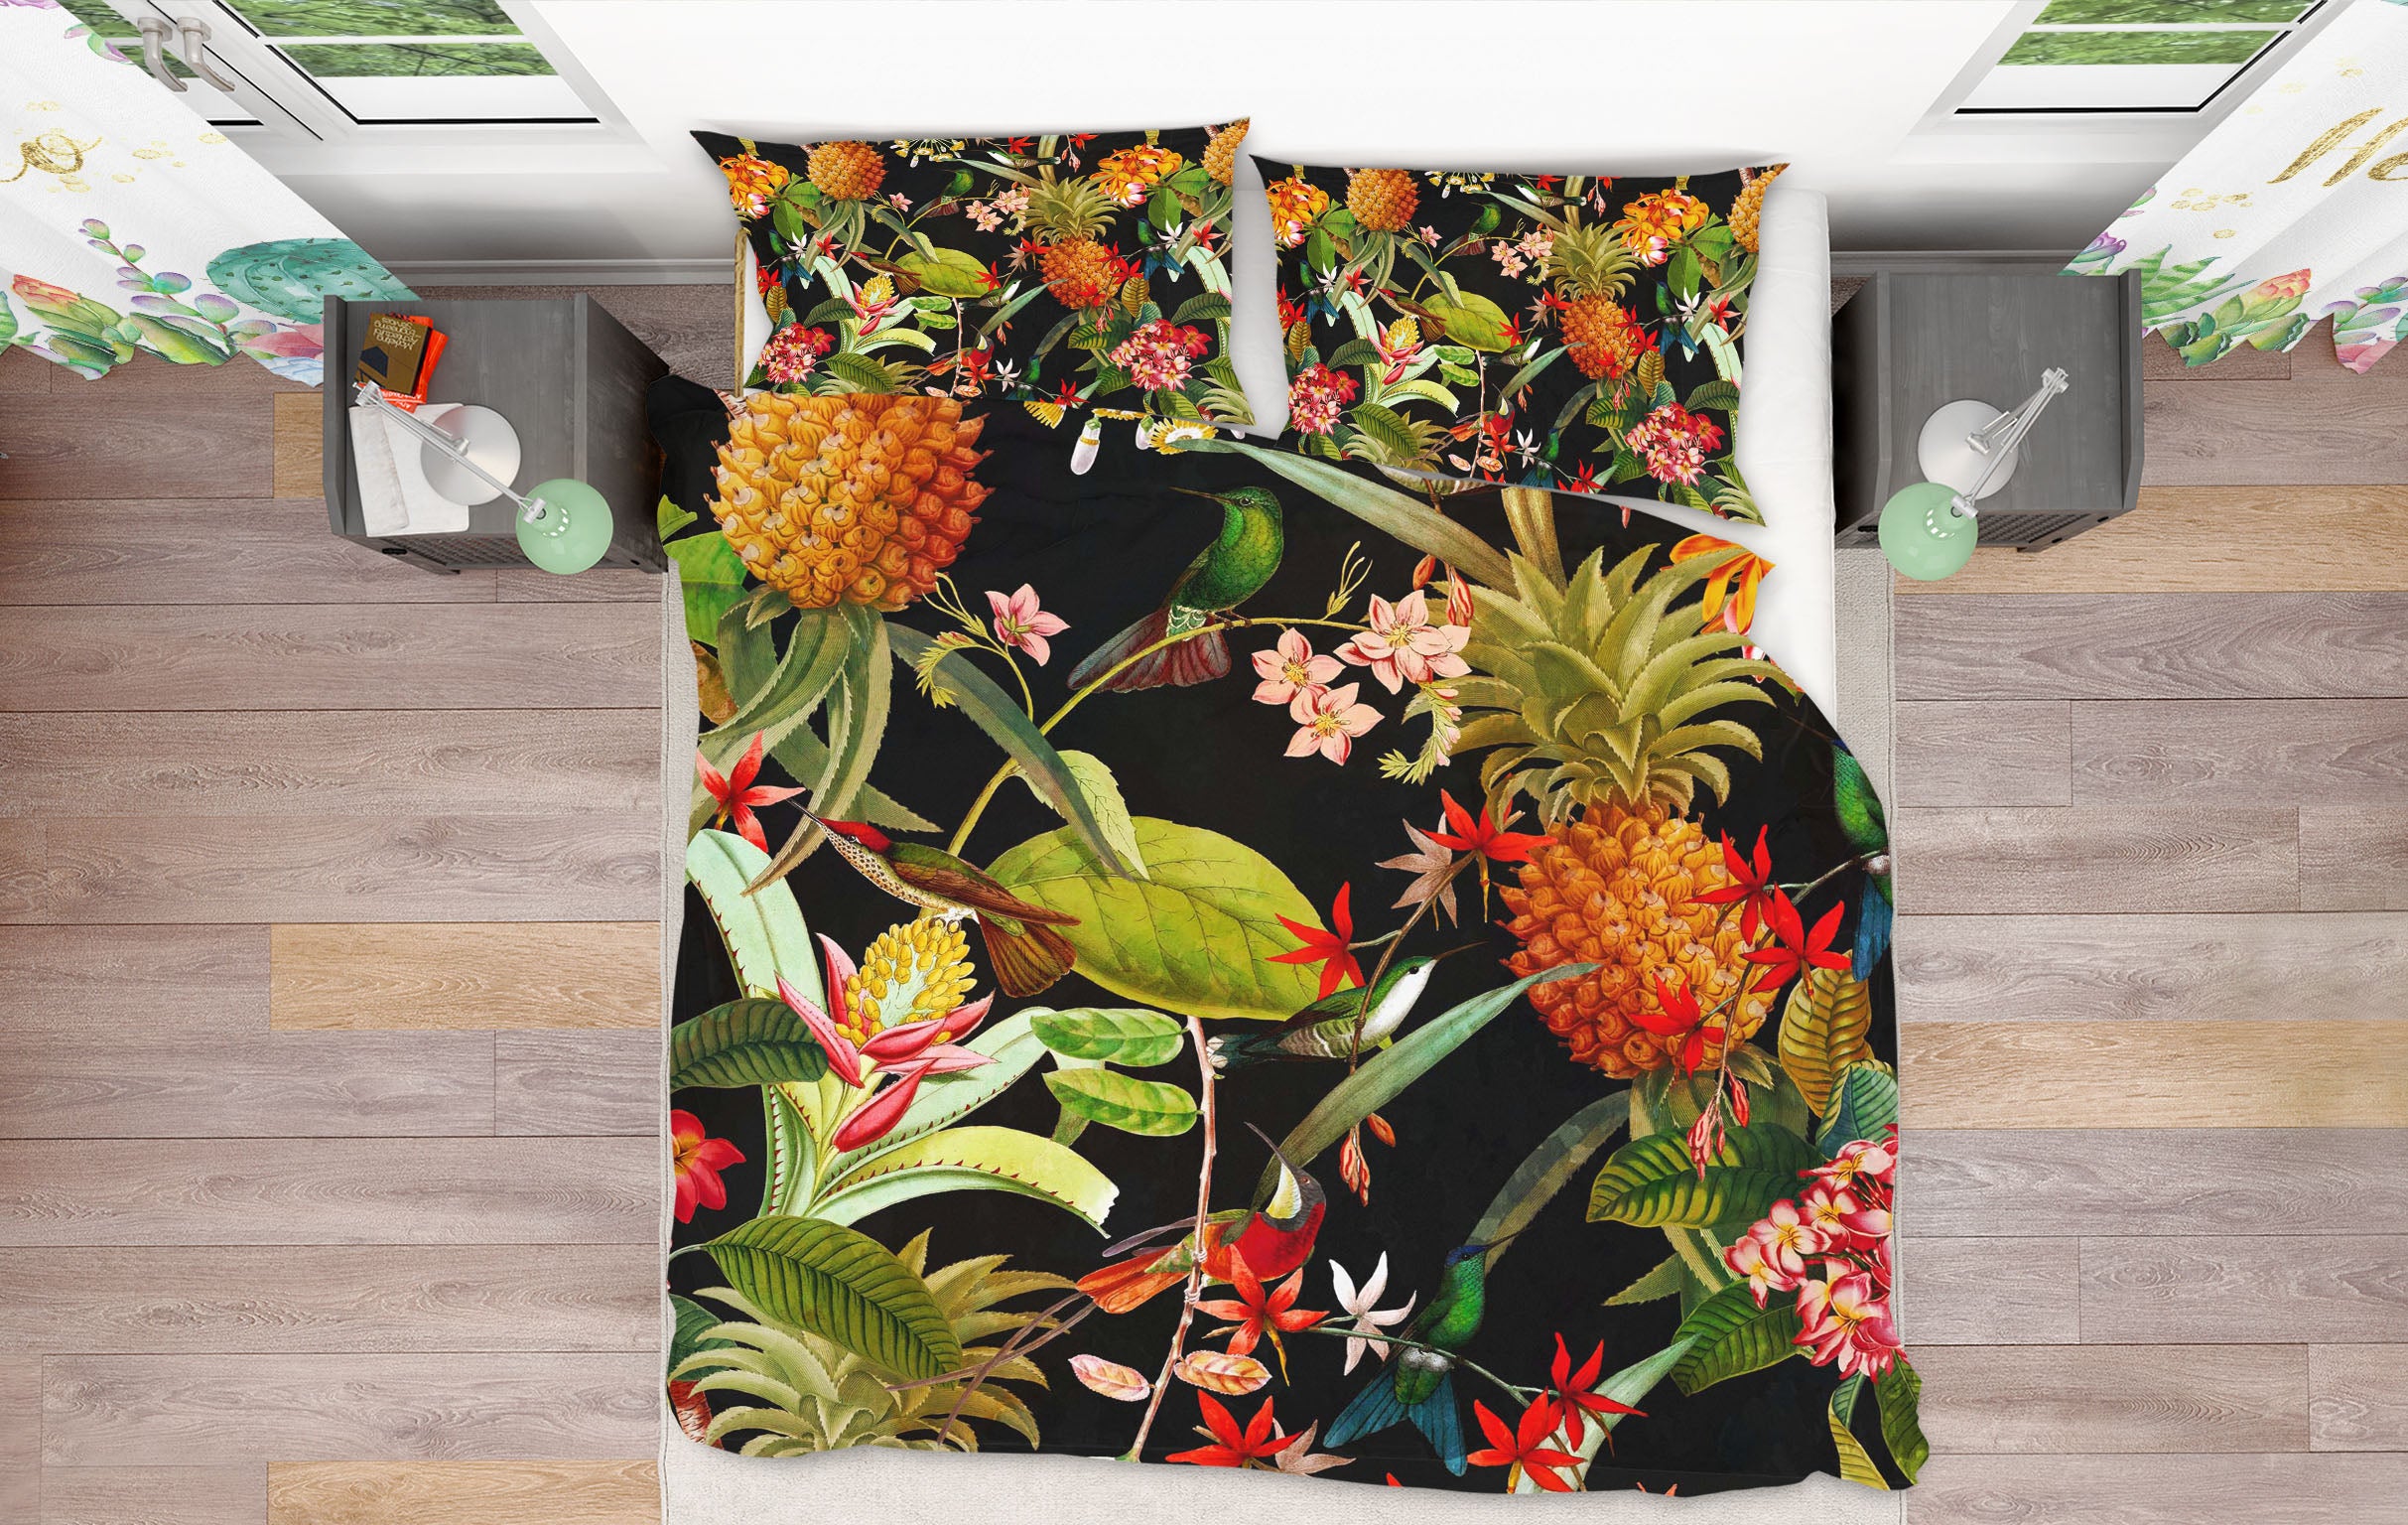 3D Pineapple Flower 161 Uta Naumann Bedding Bed Pillowcases Quilt